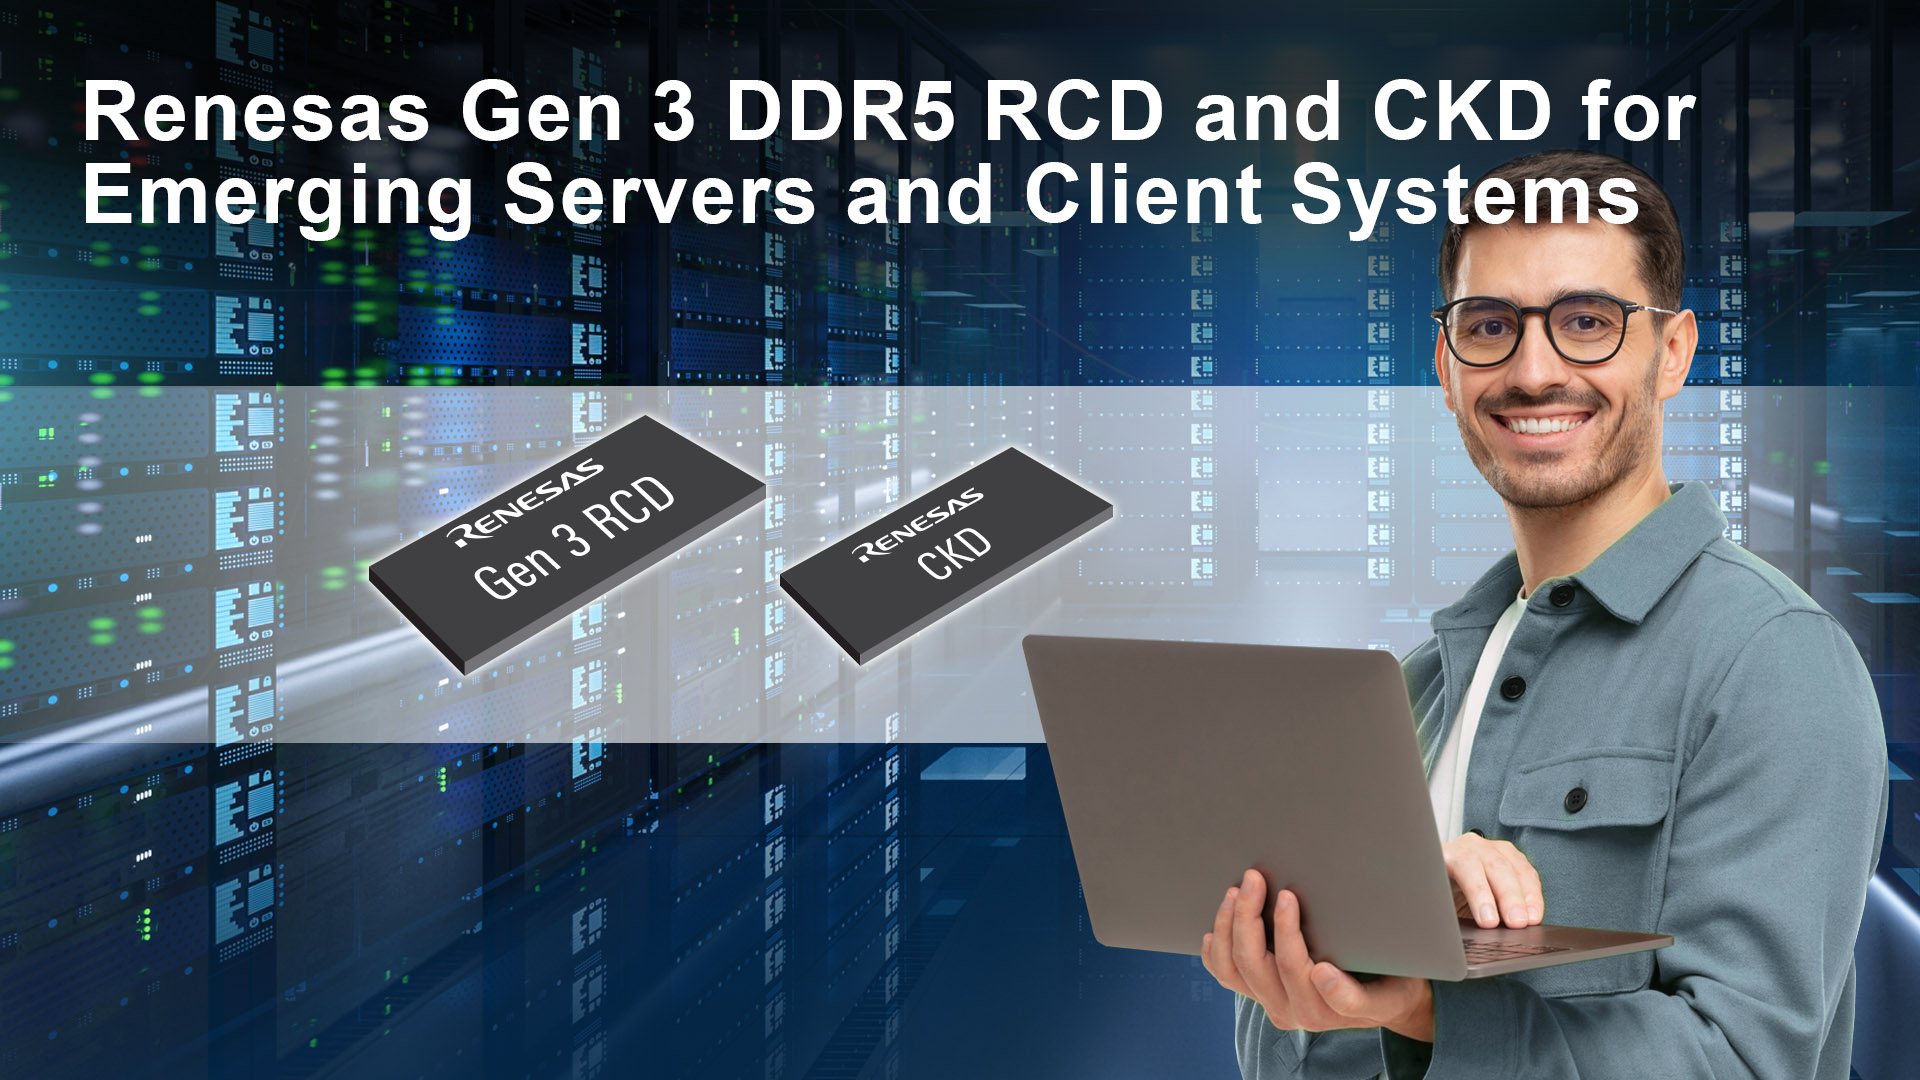 Werbebild für Renesas DDR5 CKD-Chip